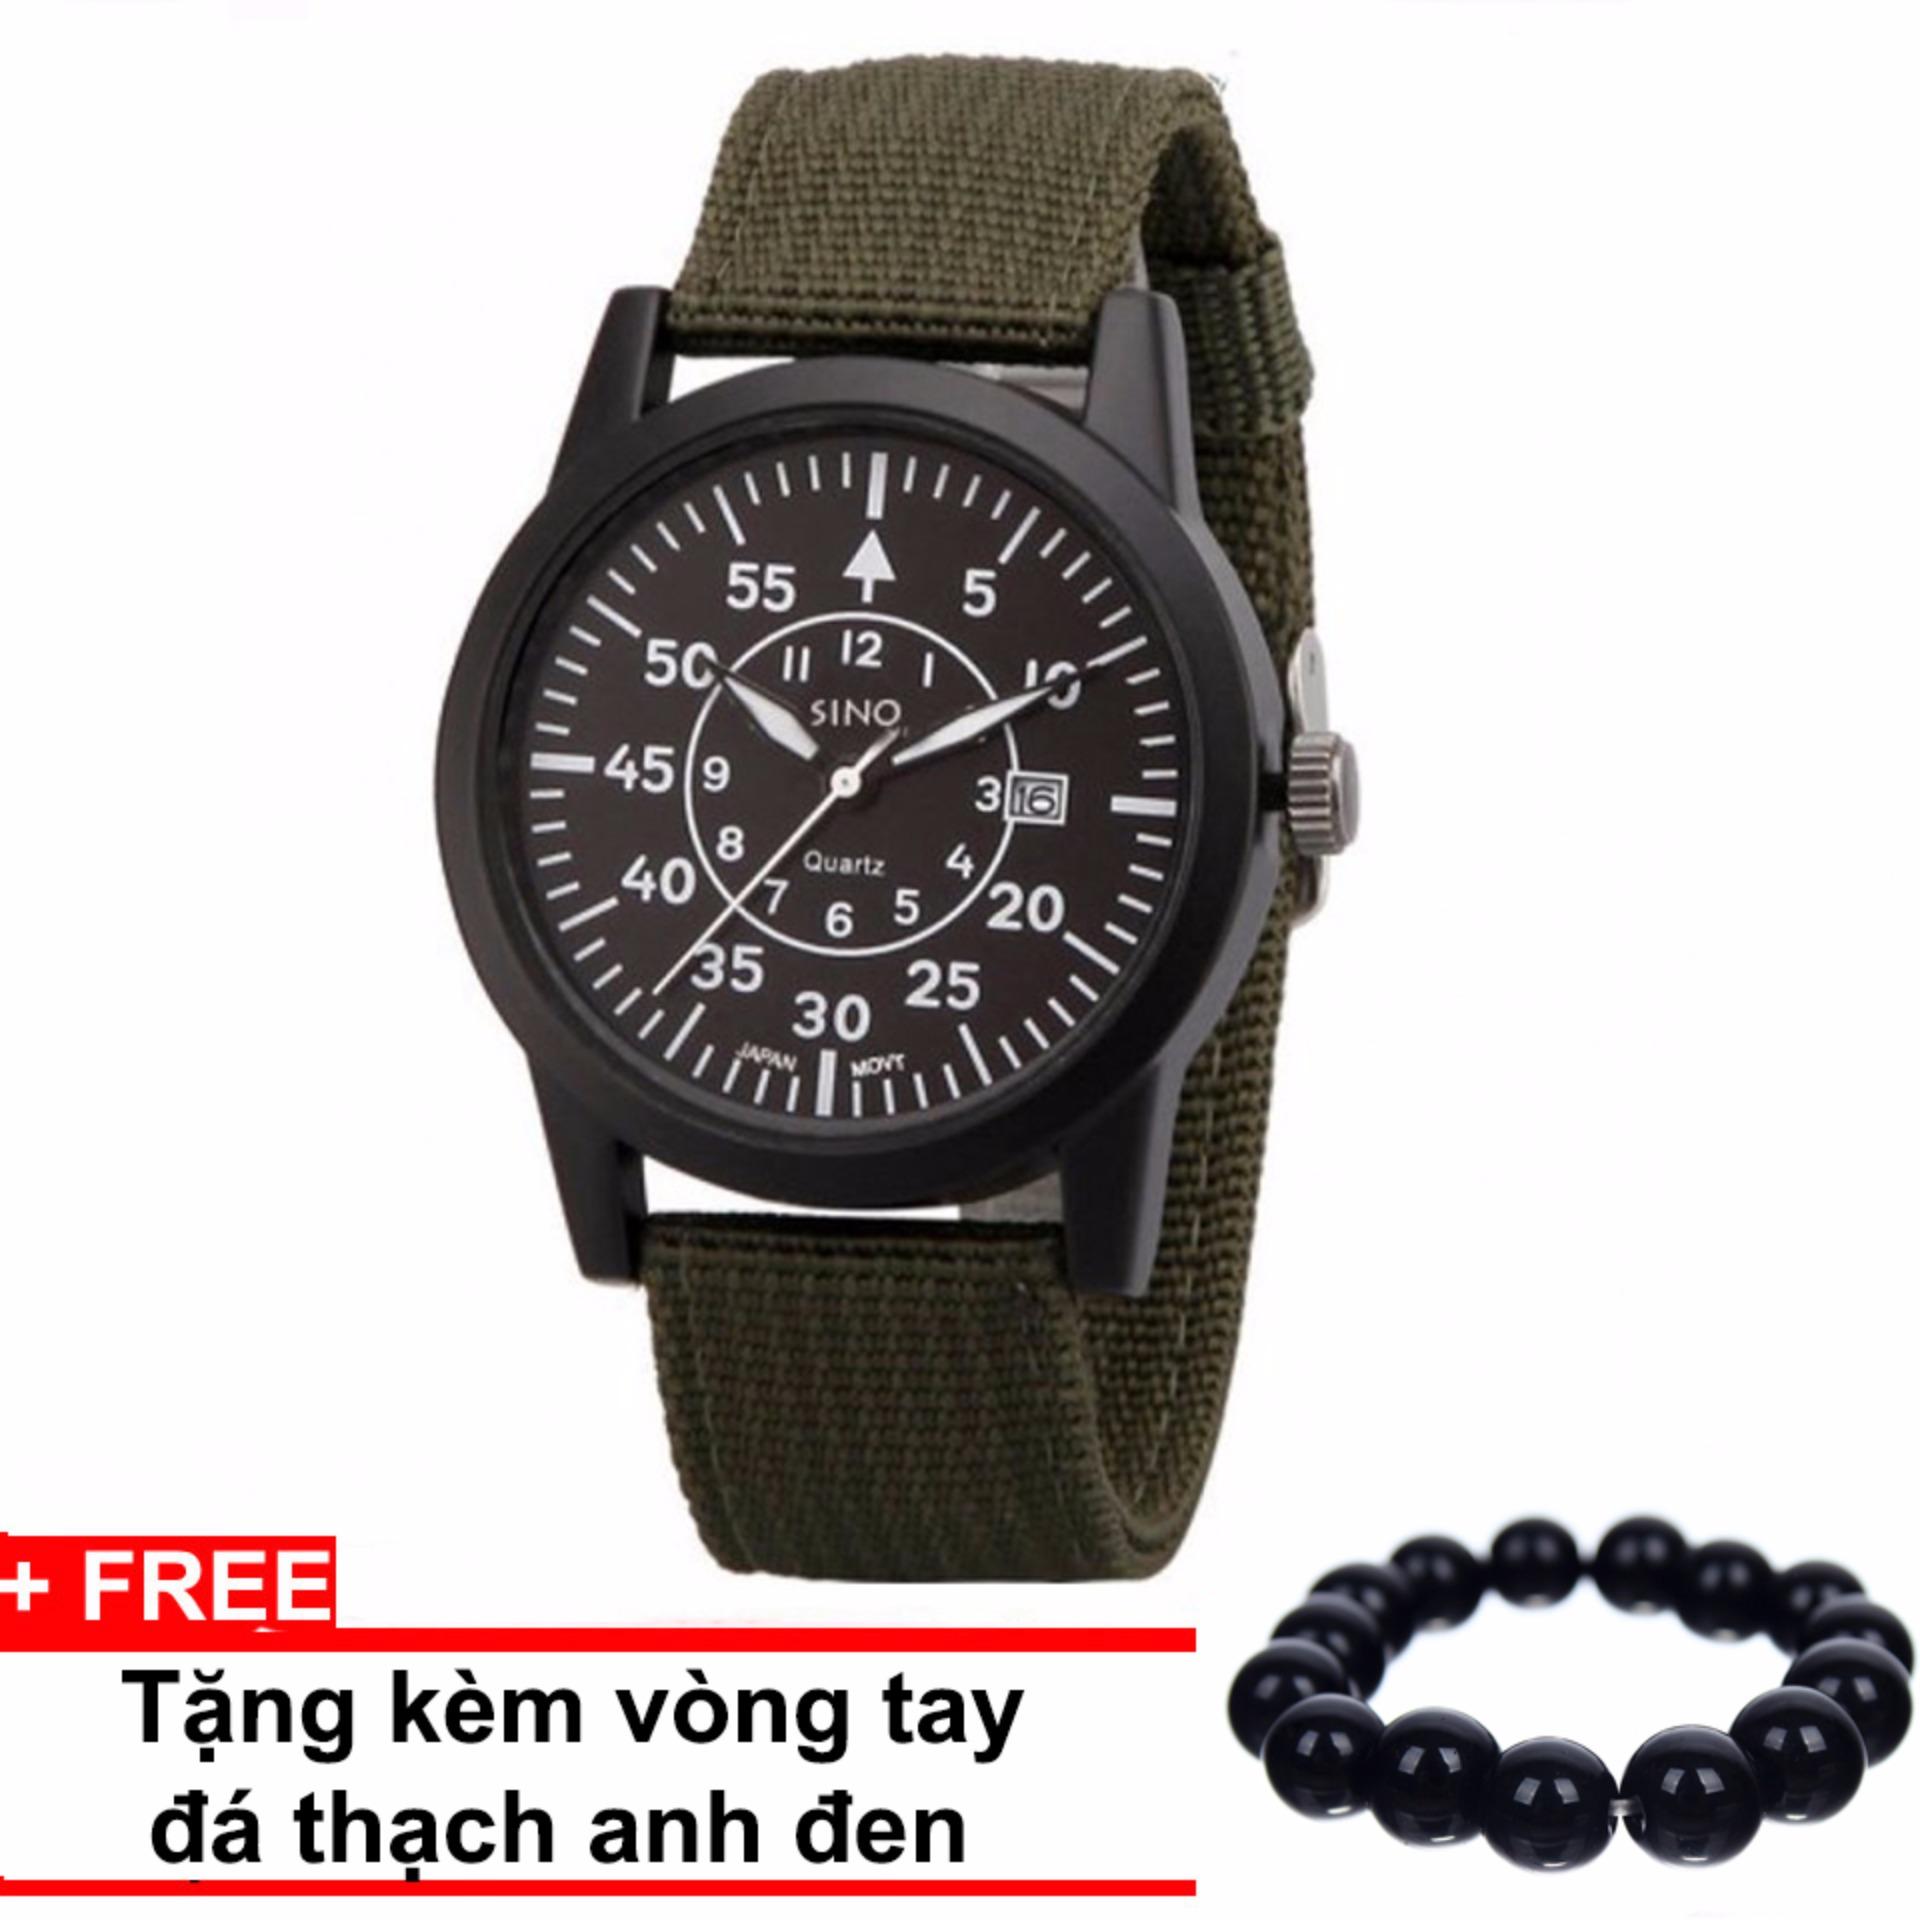 Đồng hồ dây vải SINO JAPAN MOVT Si8868 (Xanh) + Tặng kèm vòng tay thạch anh đen